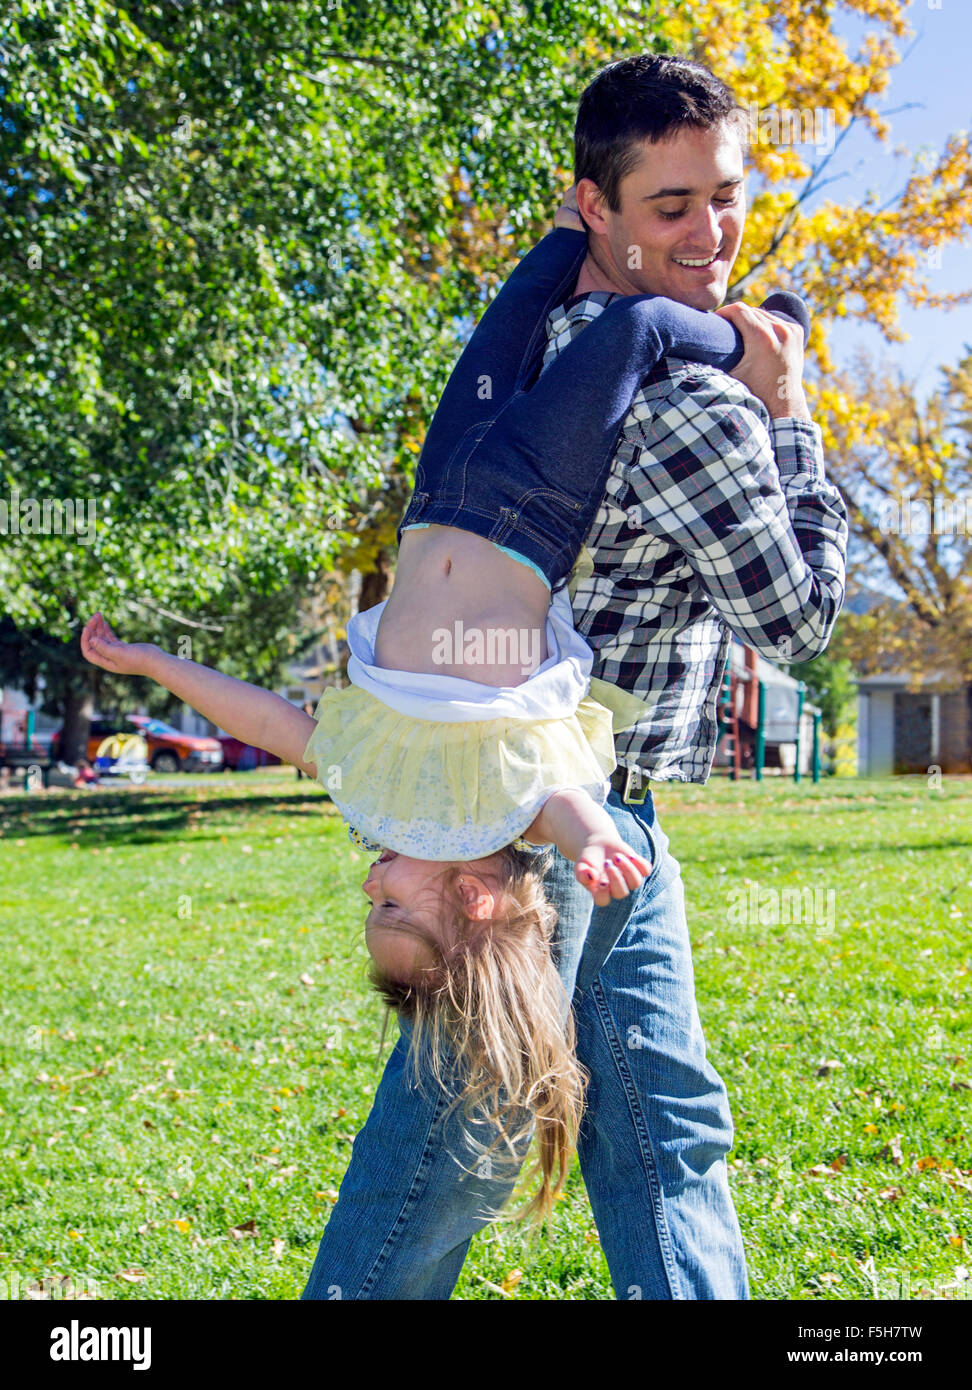 Padre festivamente llevar hija joven boca abajo en el parque Foto de stock